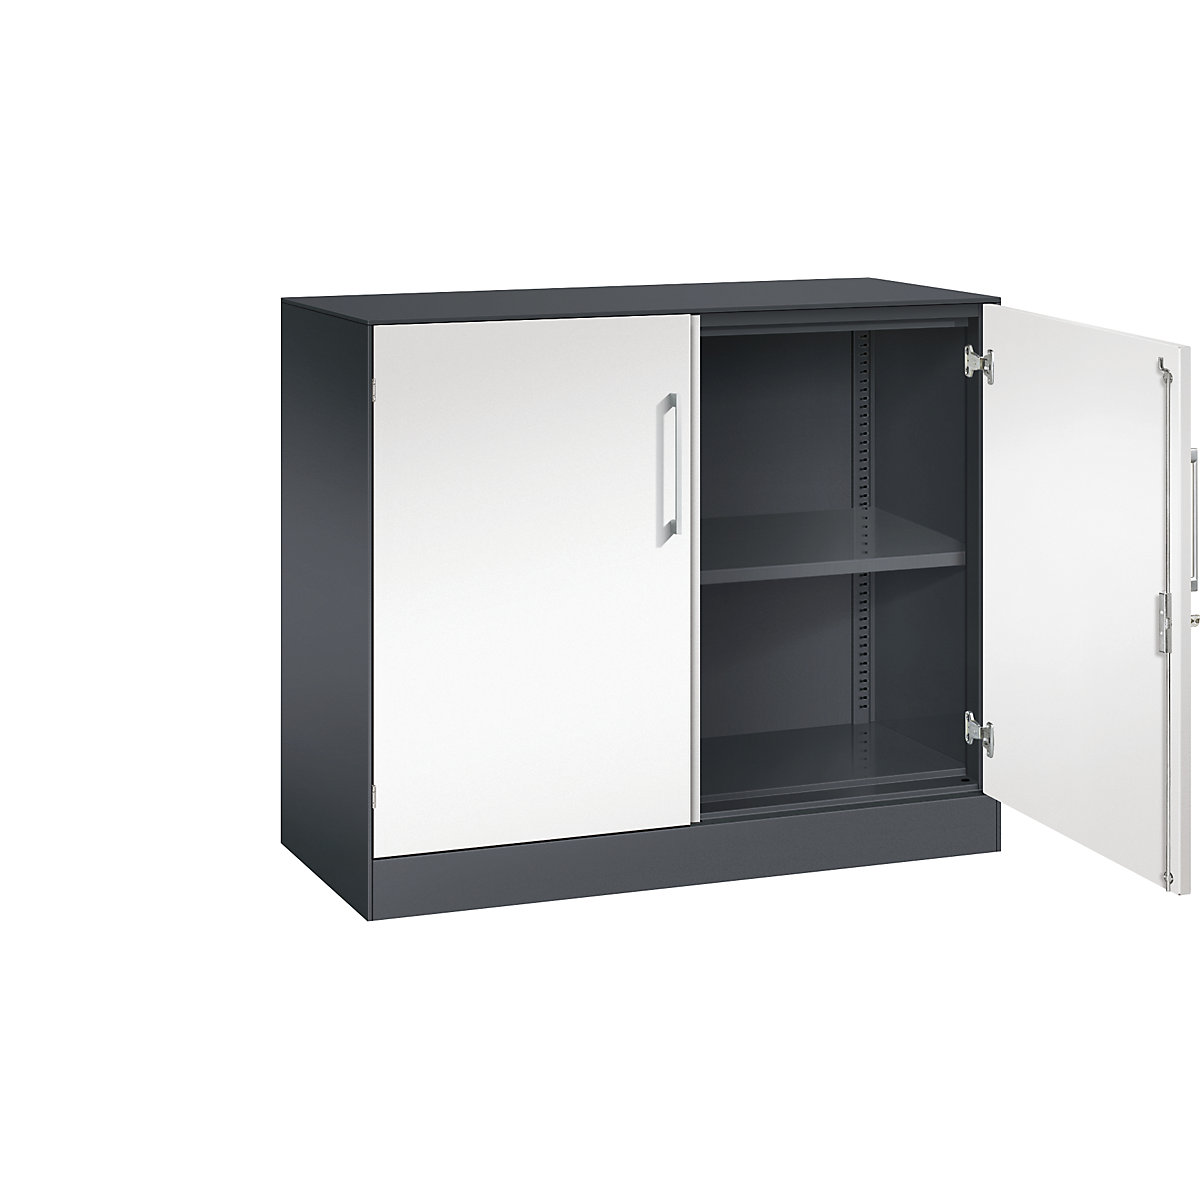 ASISTO double door cupboard, height 897 mm – C+P, width 1000 mm, 1 shelf, black grey/traffic white-13